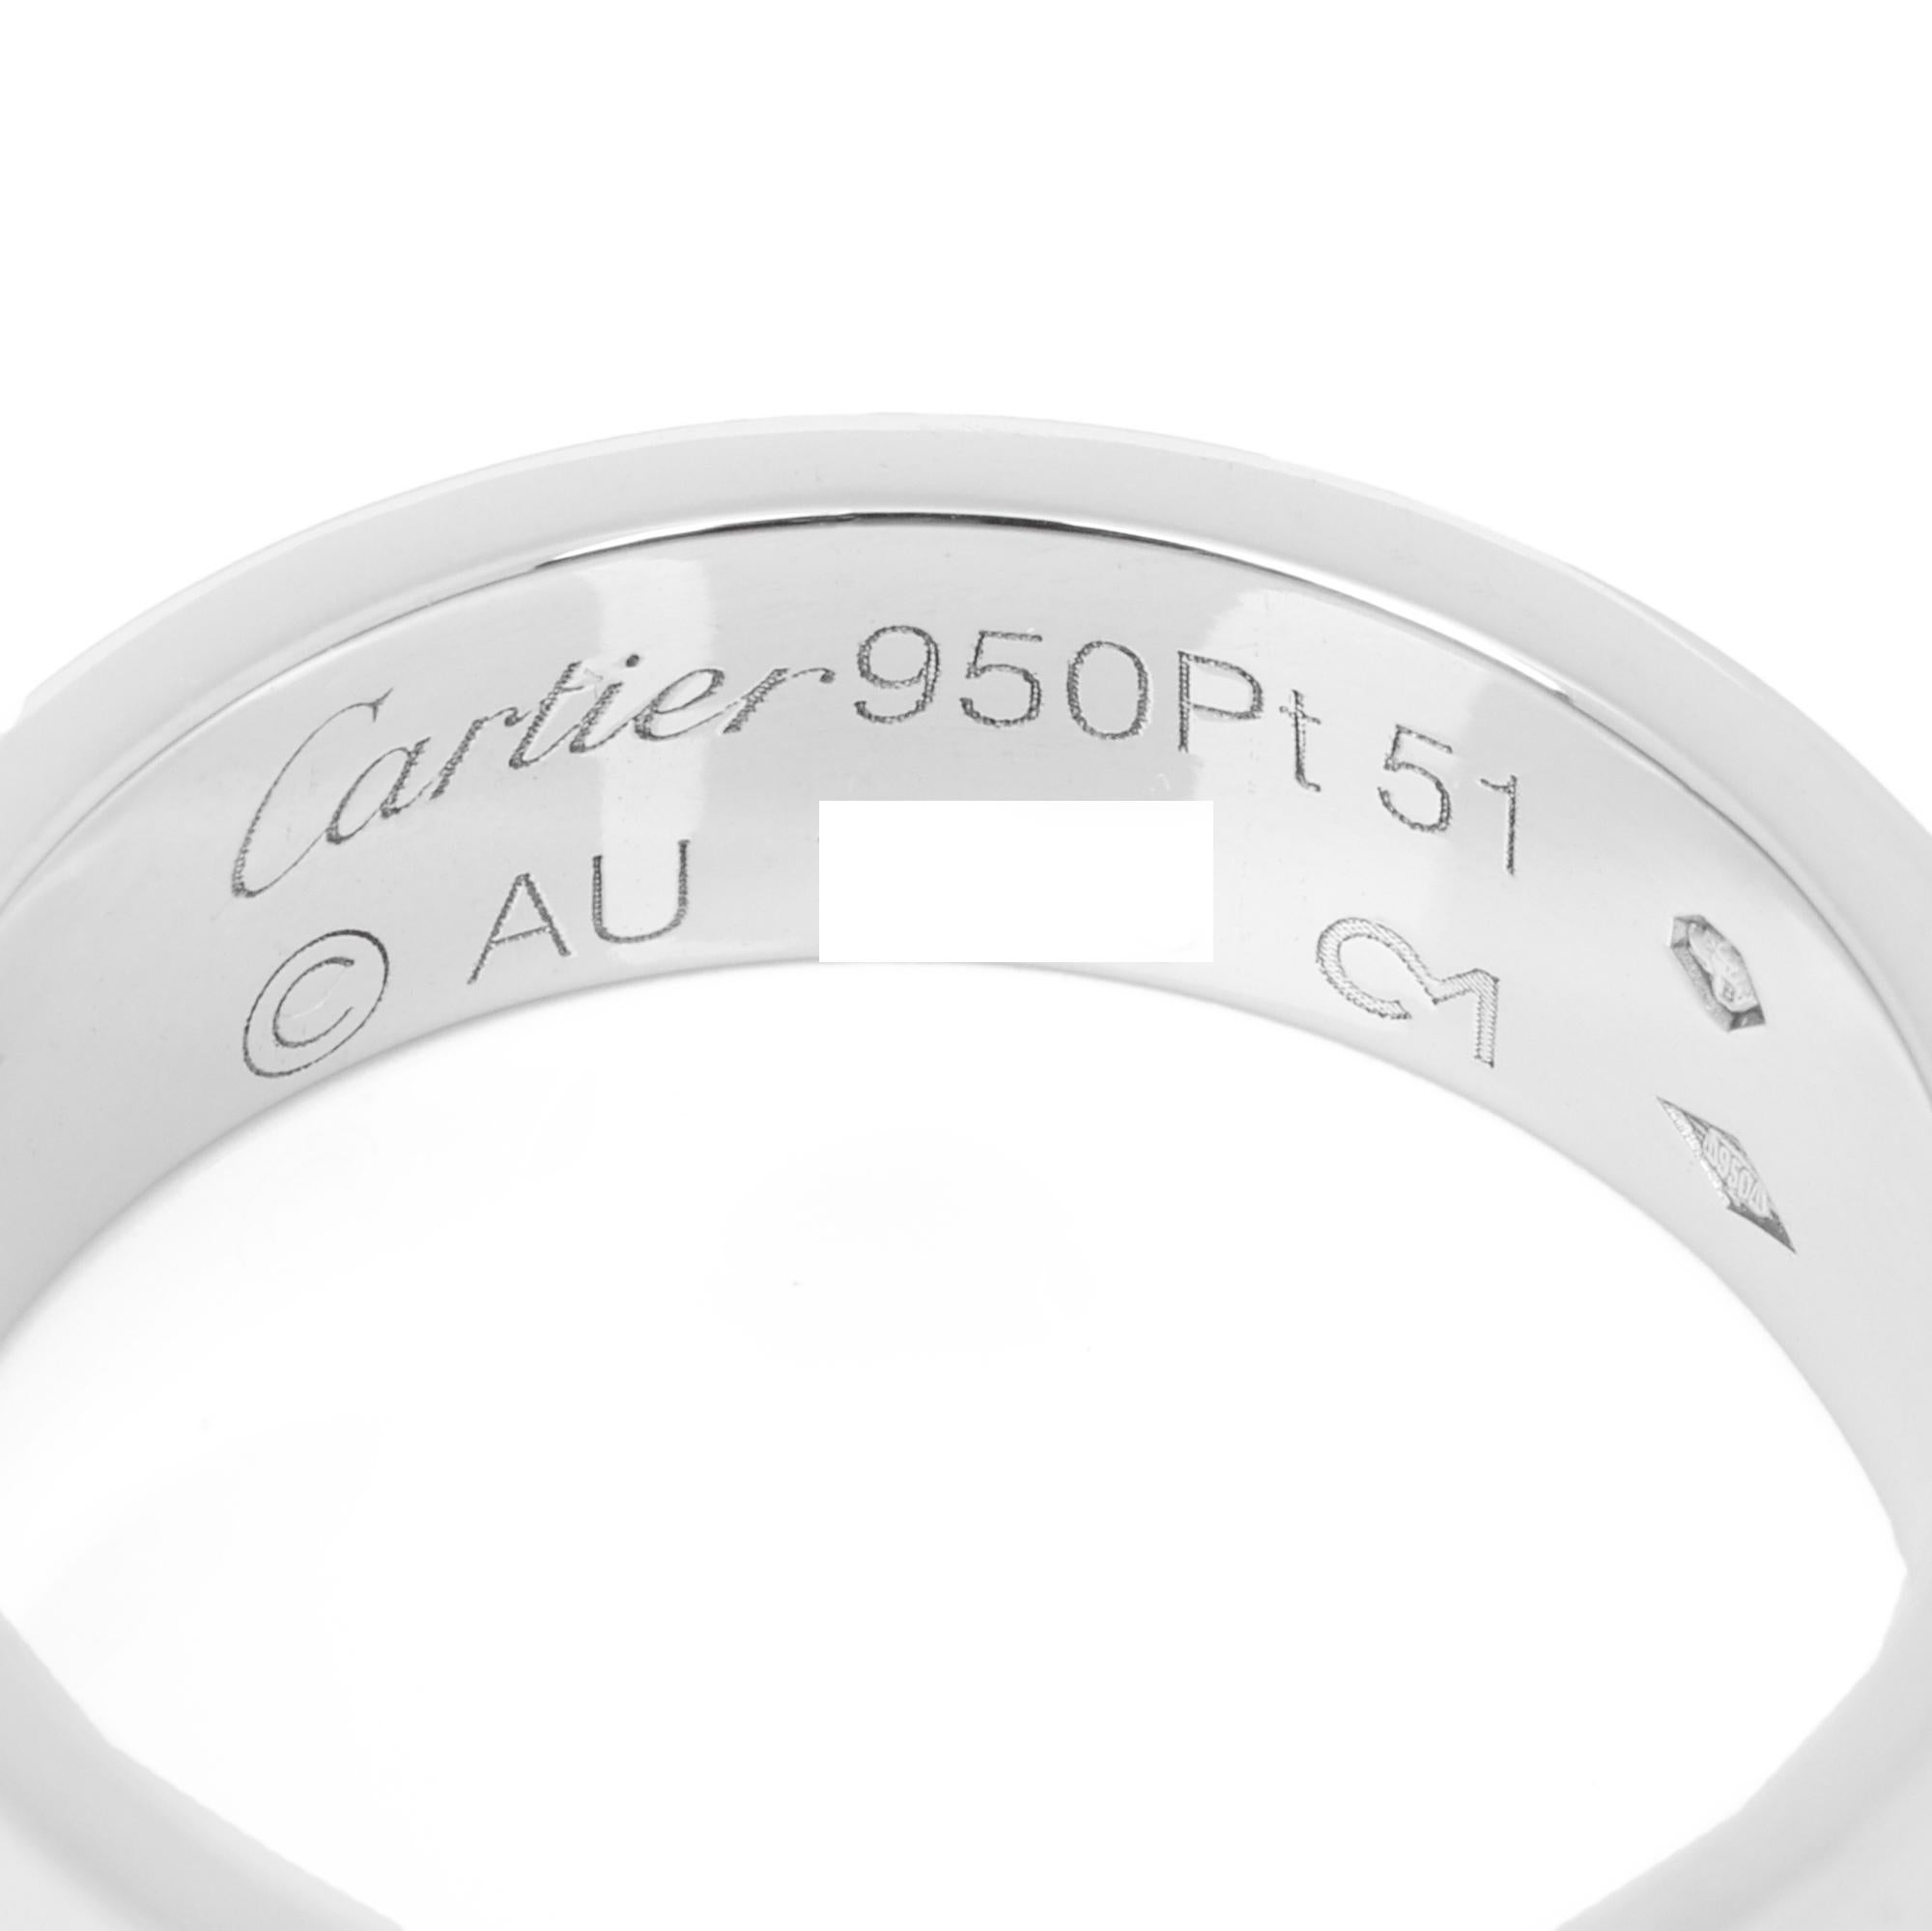 Cartier Platin Liebesband Ring

Marke Cartier
Modell Platin Love Band Ring
Produkttyp Ring
Seriennummer AU****
MATERIAL(e) Platin
UK Ring Größe L
EU-Ring Größe 51
US Ring Größe 5 3/4
Größenänderung möglich Nein
Breite des Bandes 5,4 mm
Gesamtgewicht